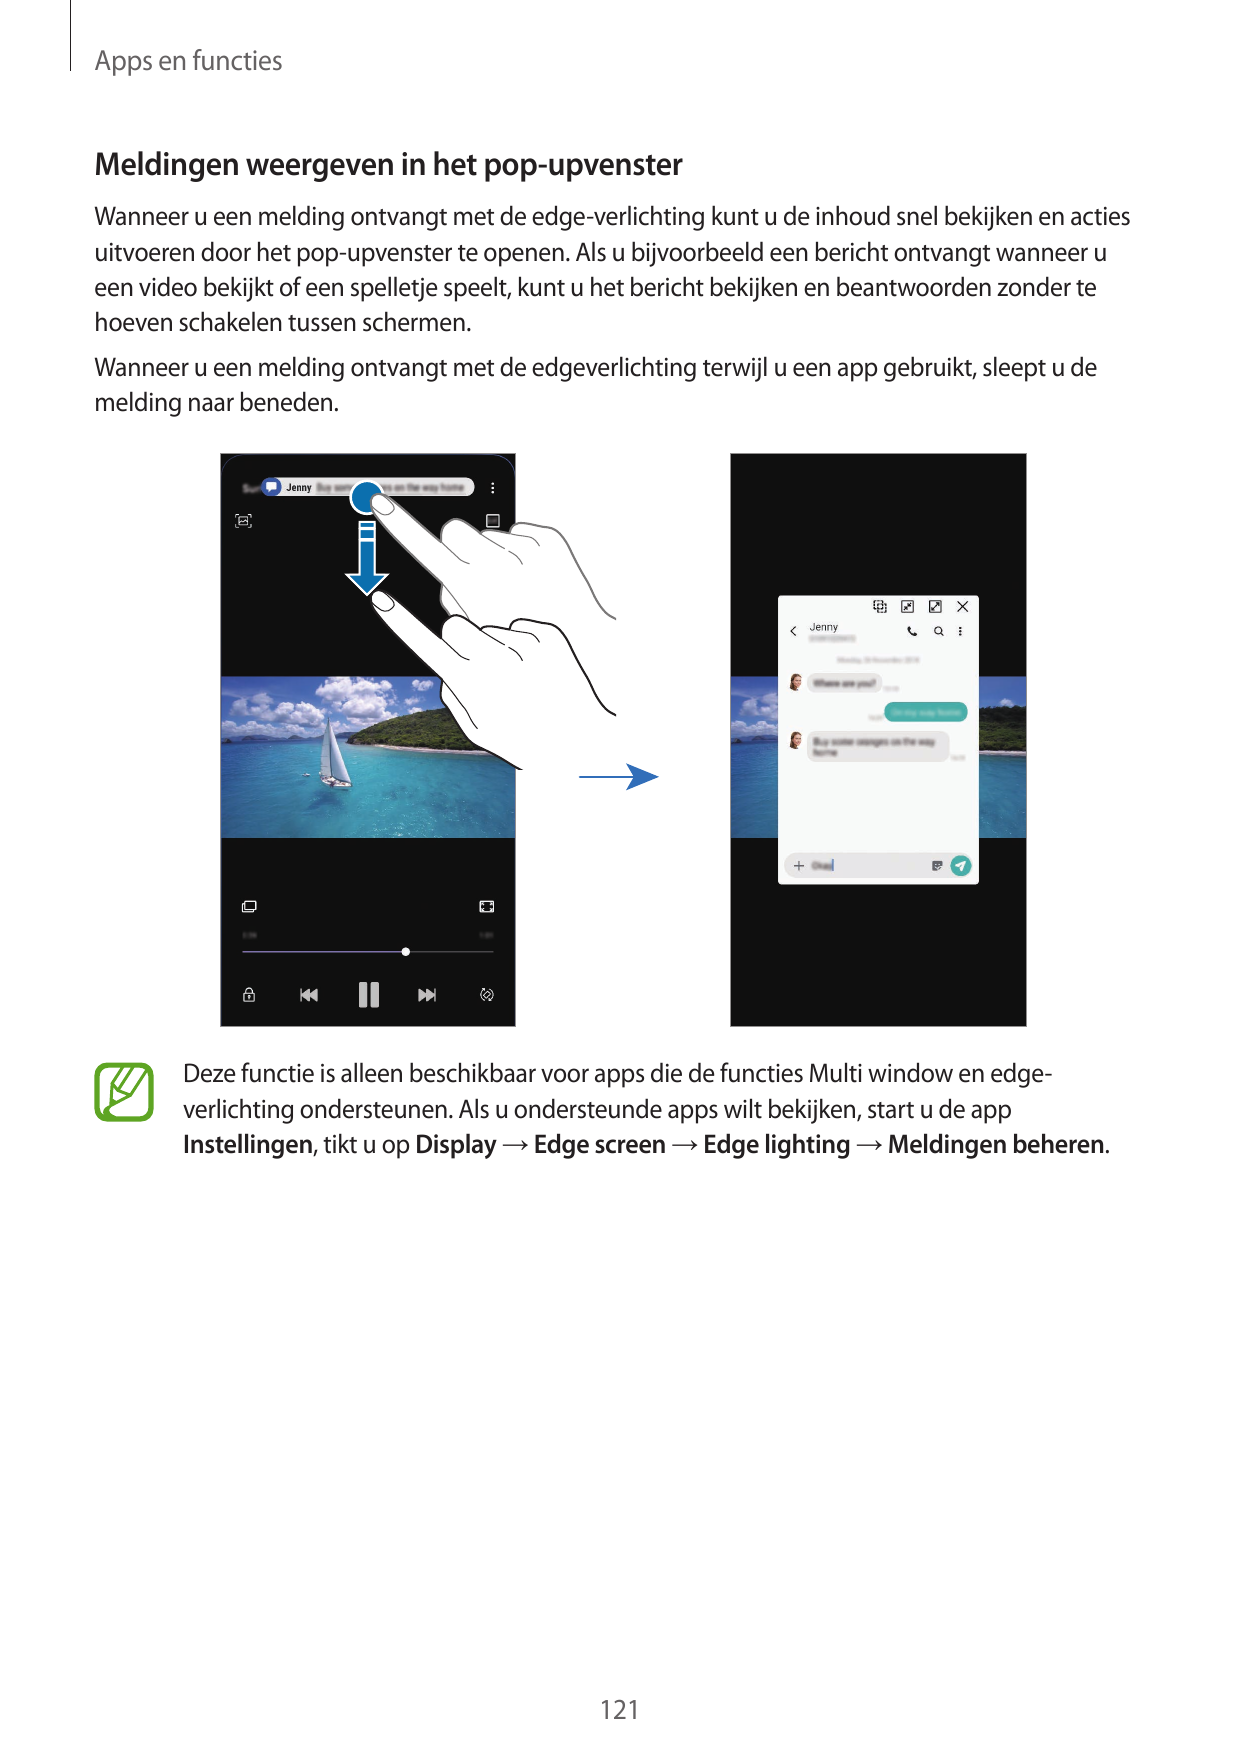 Apps en functiesMeldingen weergeven in het pop-upvensterWanneer u een melding ontvangt met de edge-verlichting kunt u de inhoud 